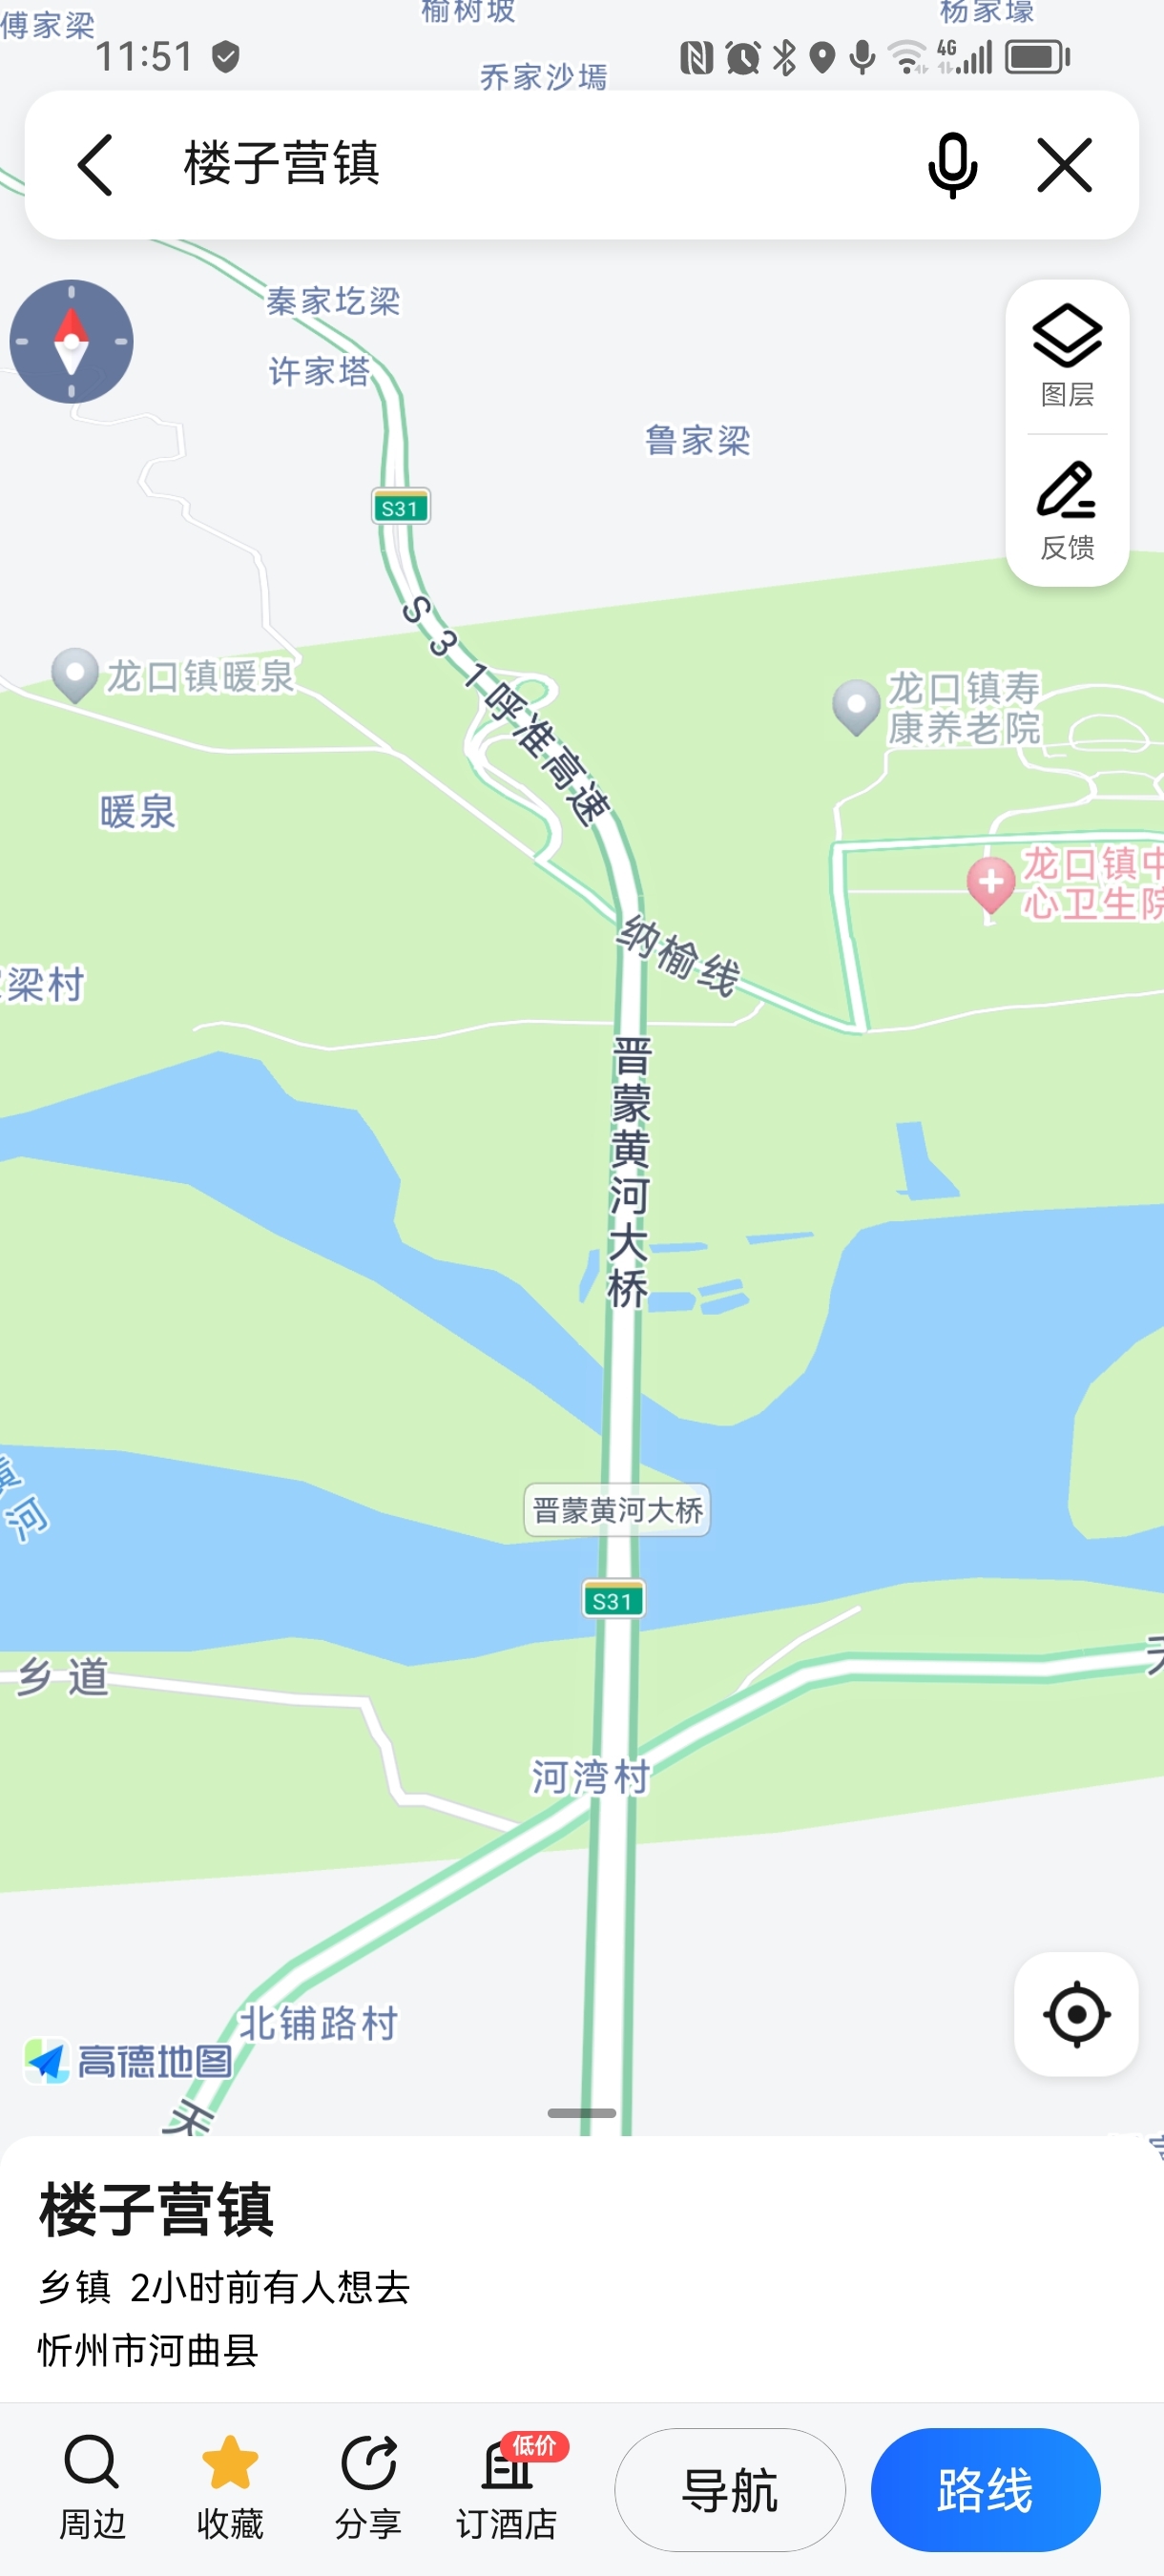 周六火车到忻州后，周日需要从忻州去河曲，楼子营镇，晋蒙大桥，怎样走方便？